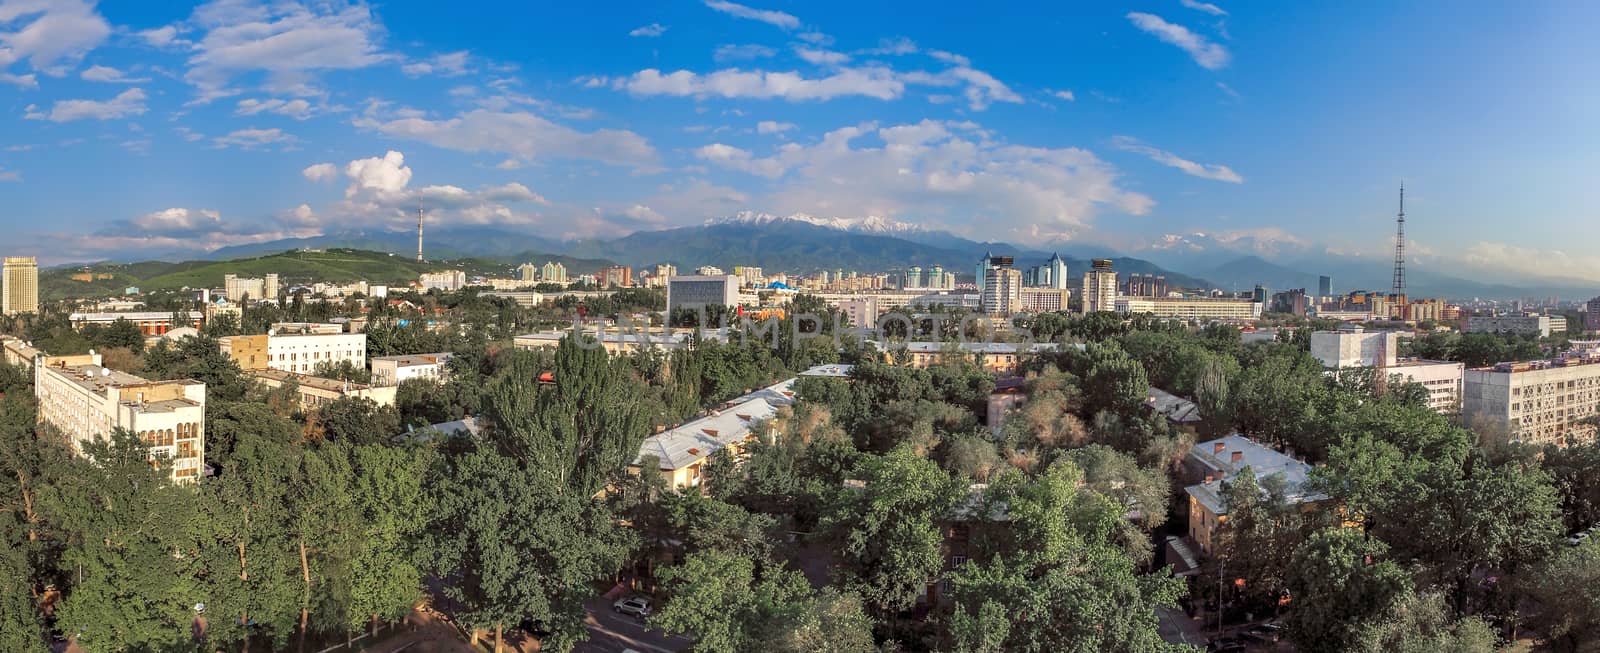 Almaty - Aerial view by Venakr